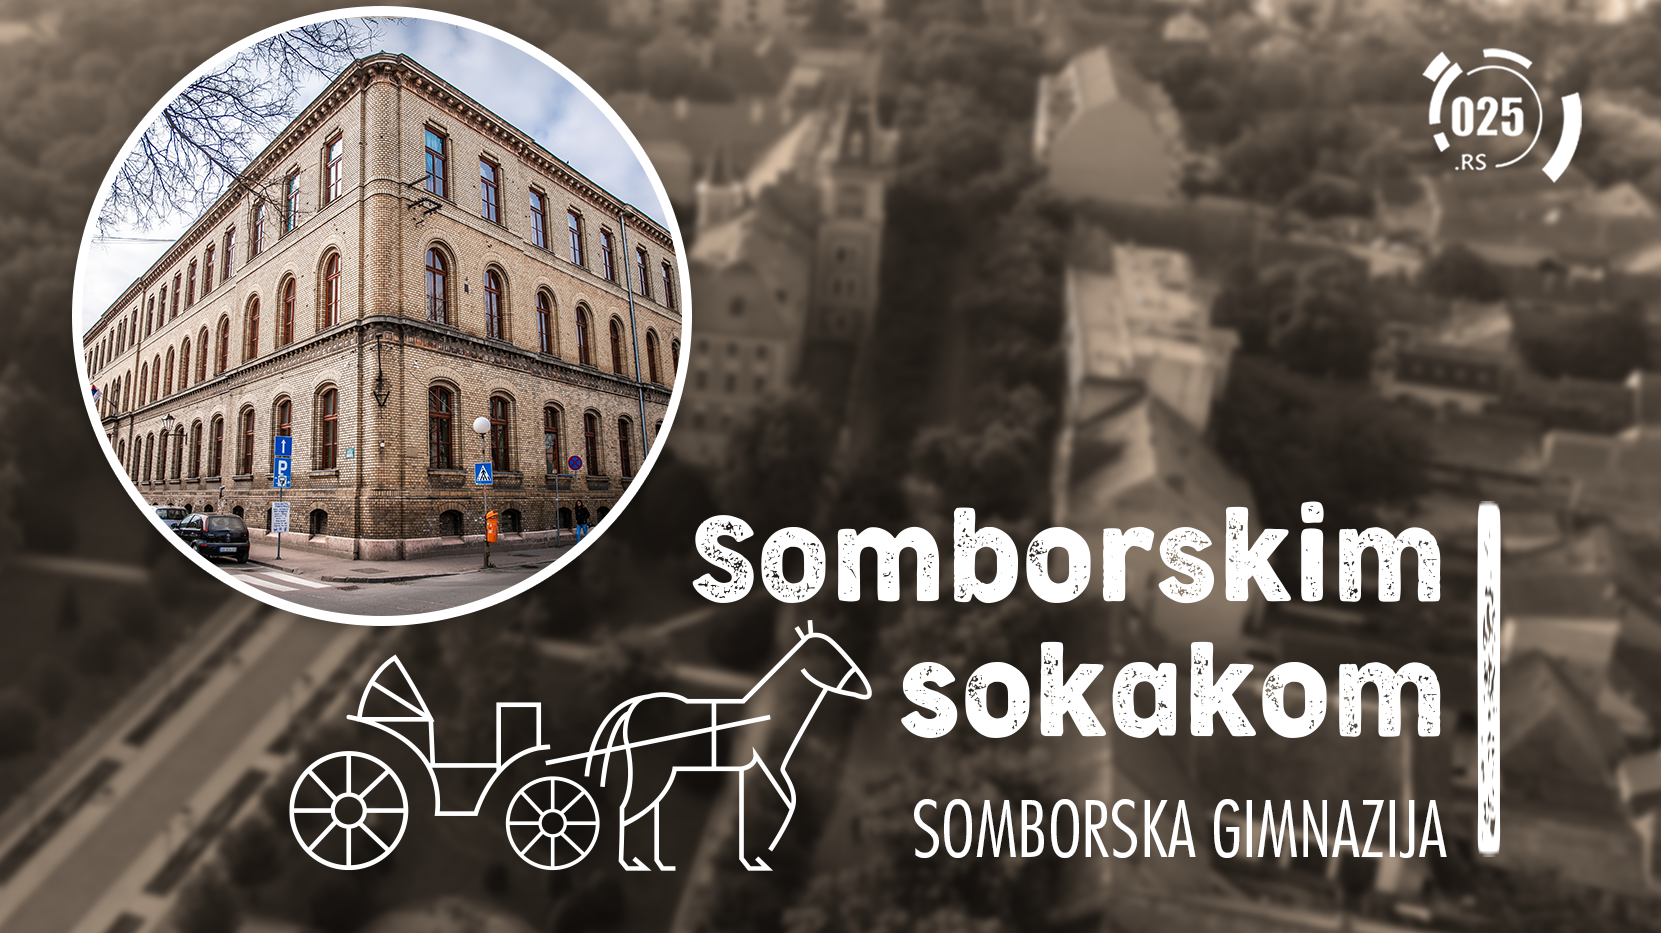 Somborskim sokakom - Gimnazija